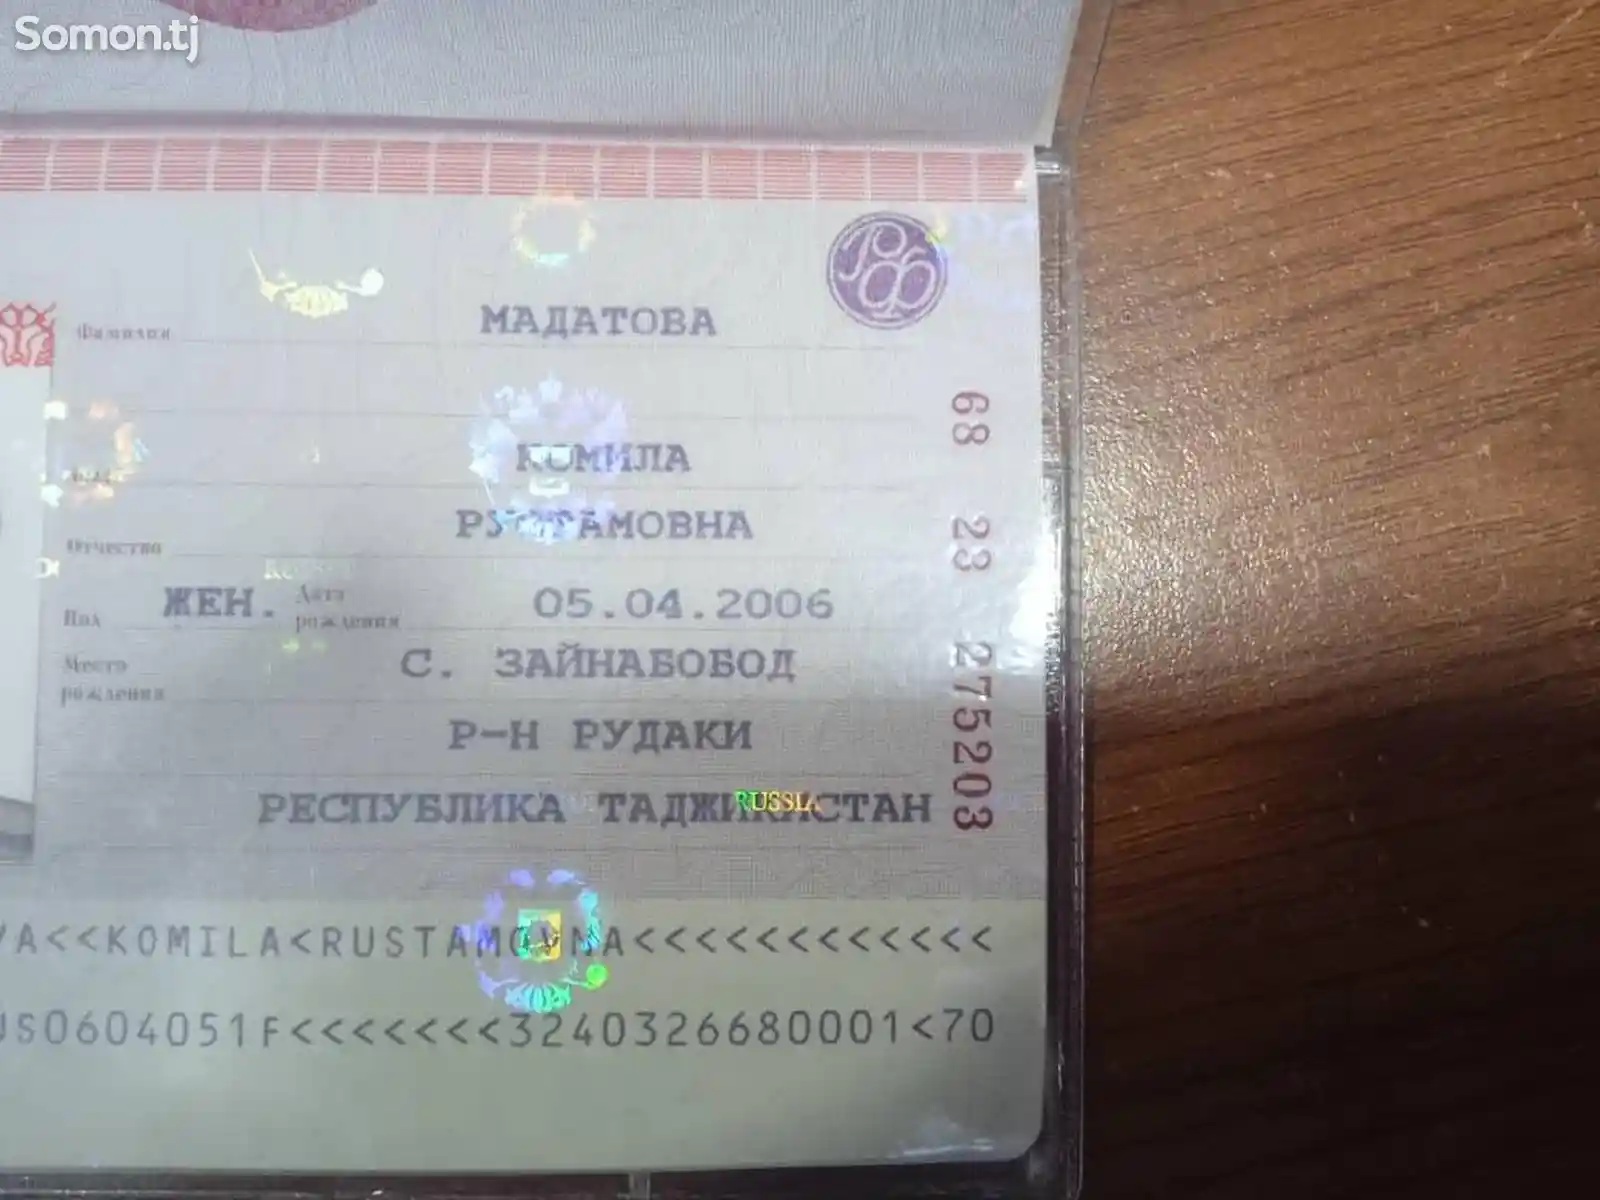 Найден паспорт на имя Мадатова Комила